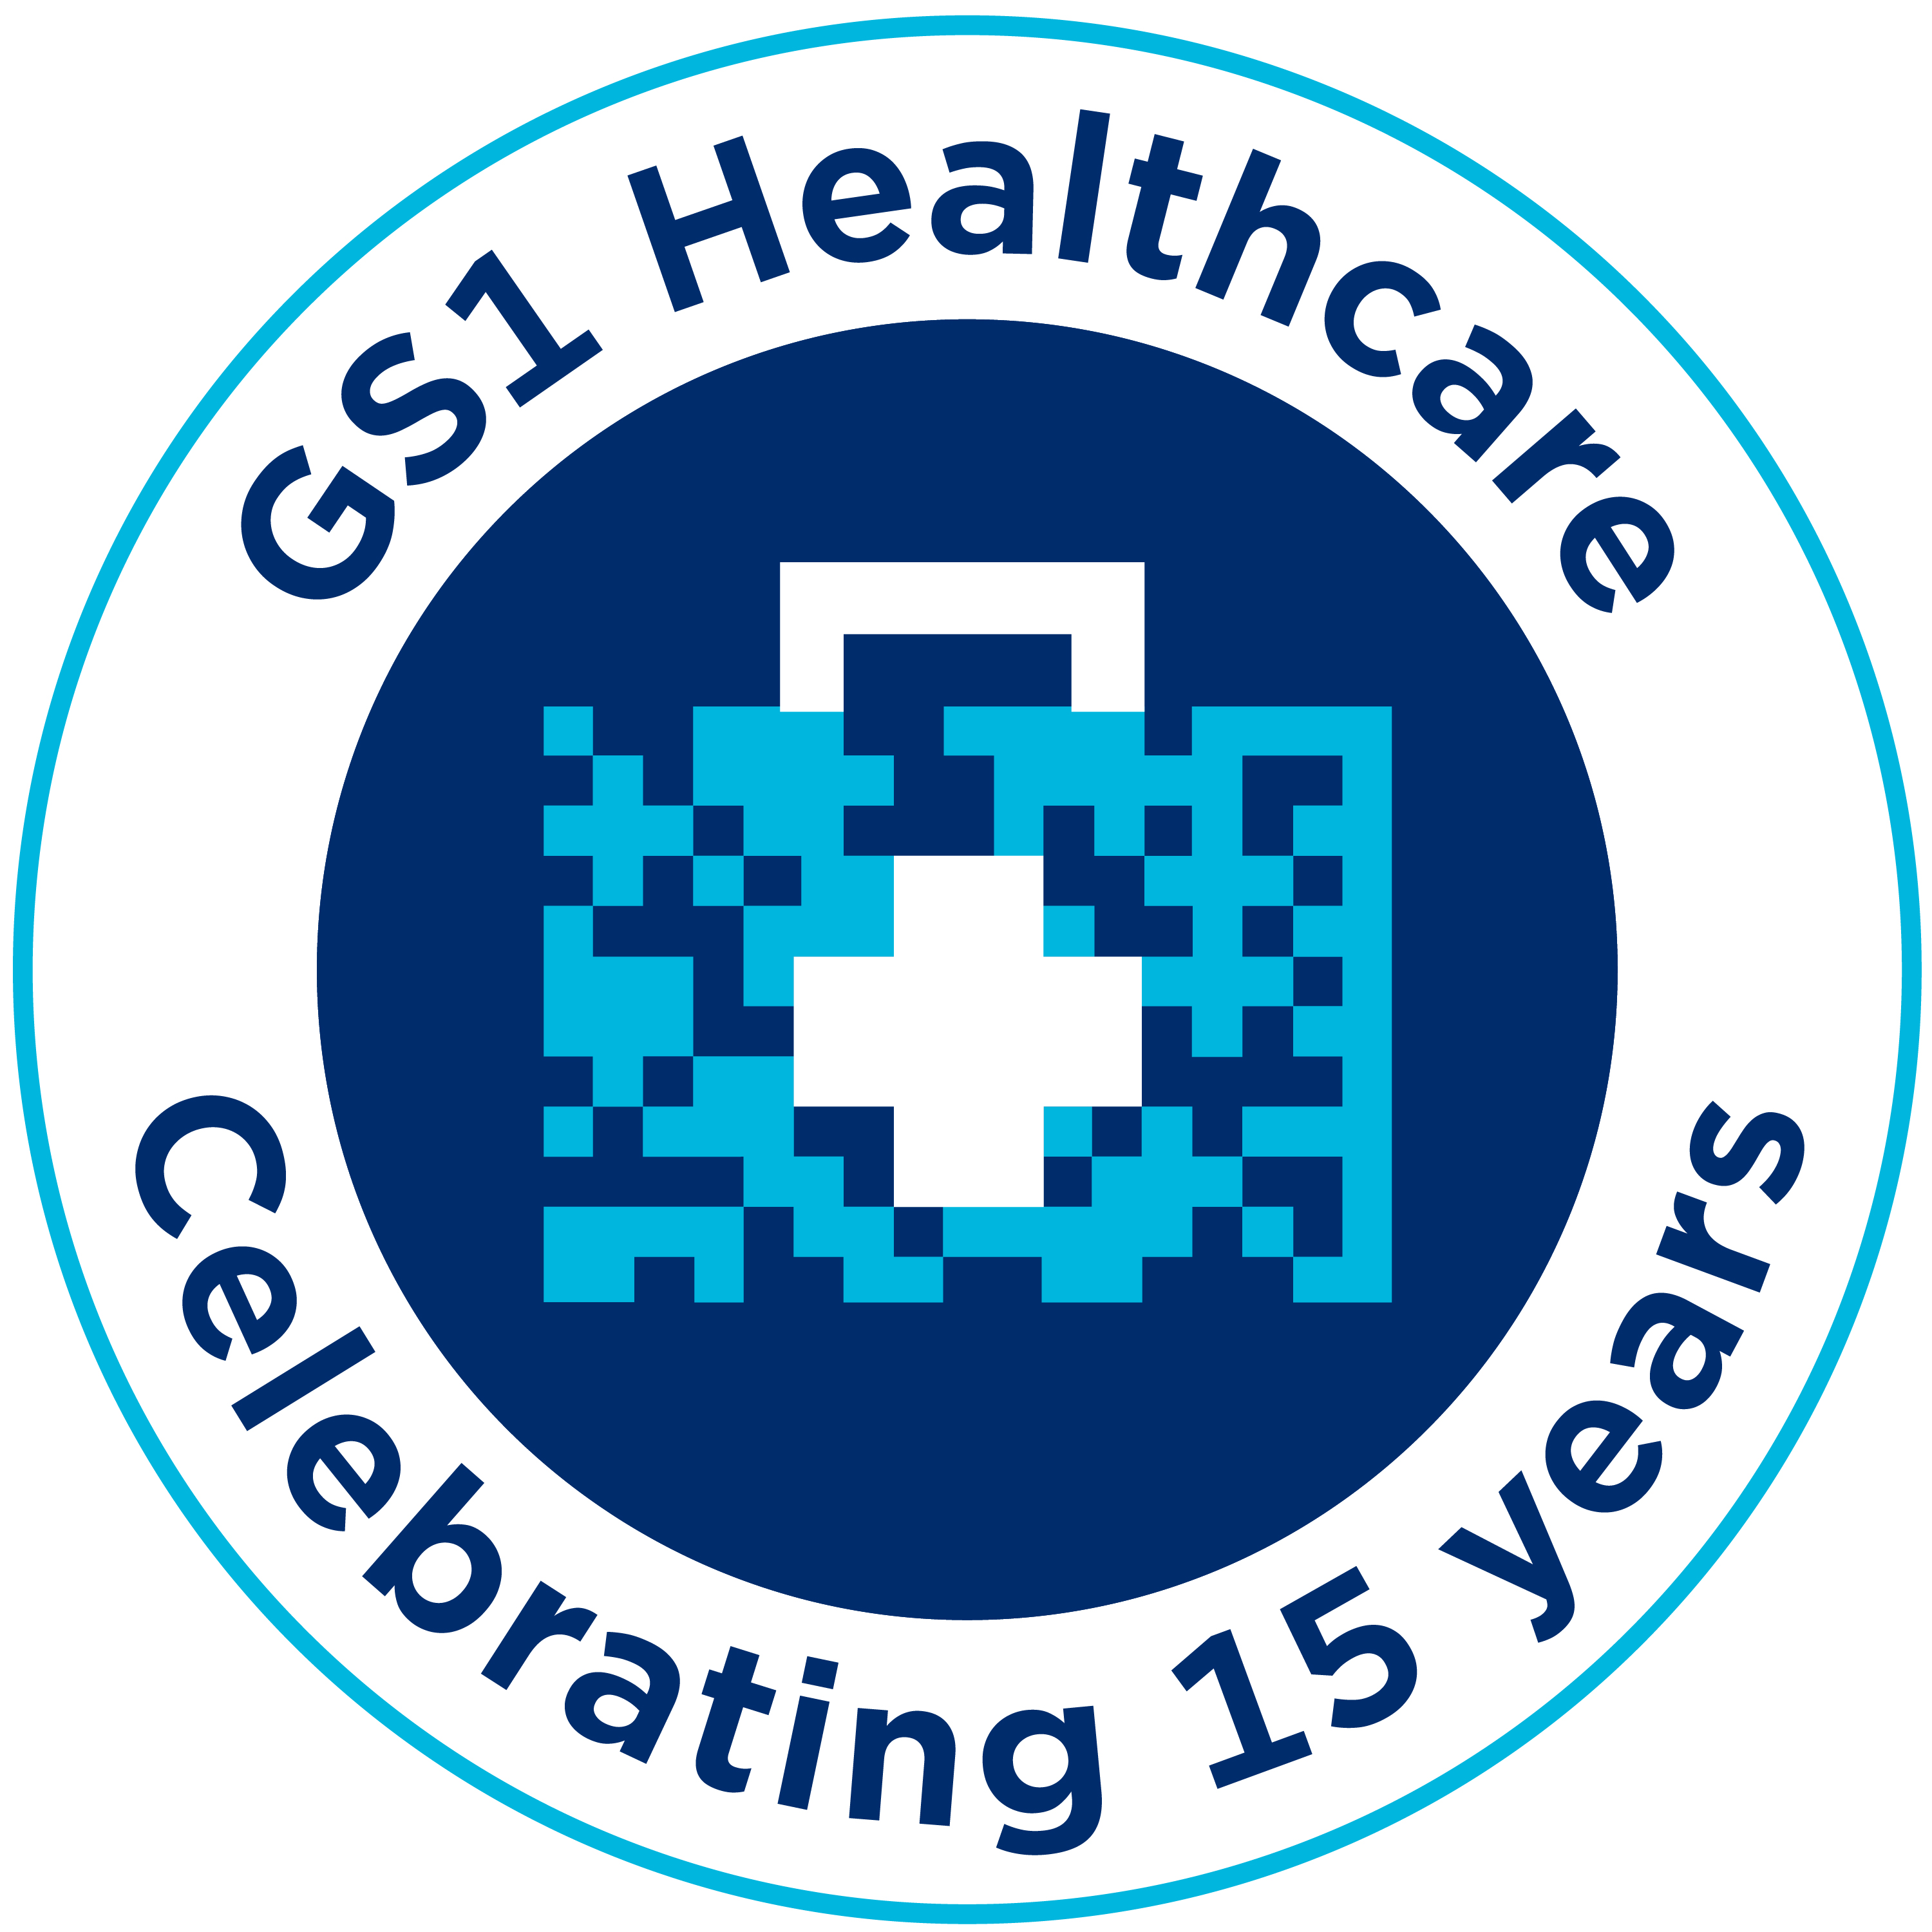 GS1 Healthcare 15th Anniversary